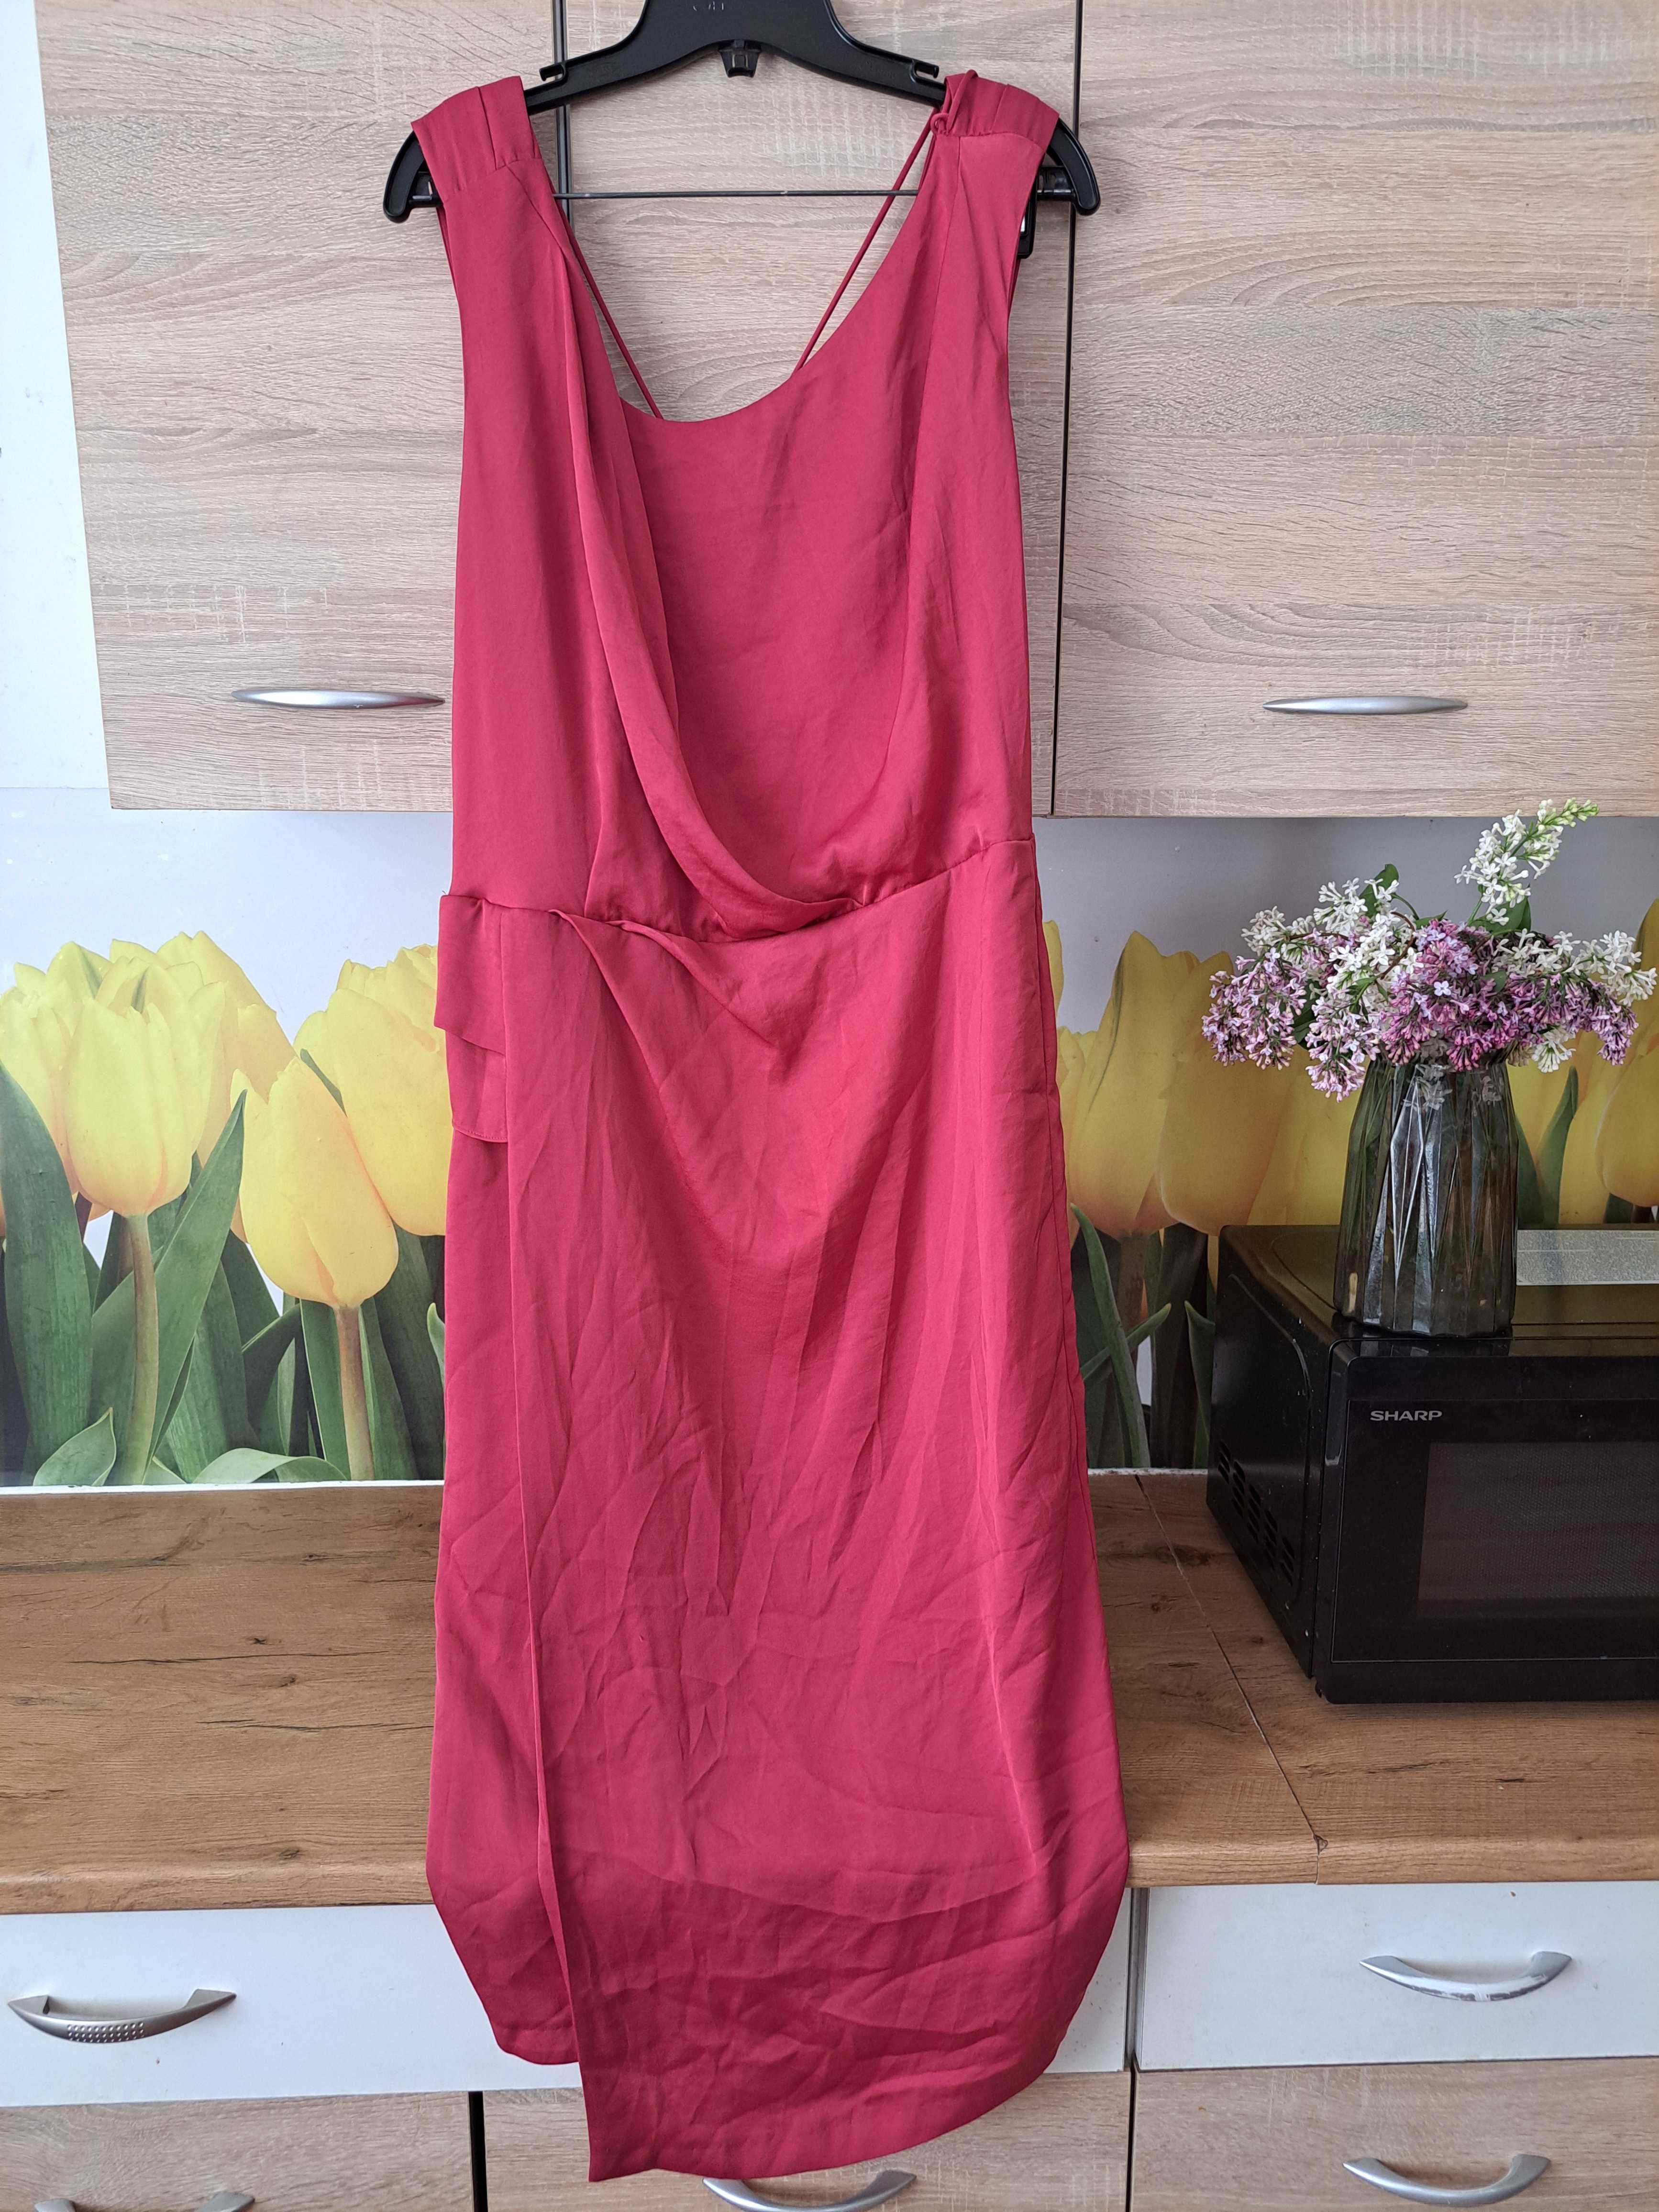 Malinowa ołówkowa sukienka Reiss rozmiar 44 poliester, wesele